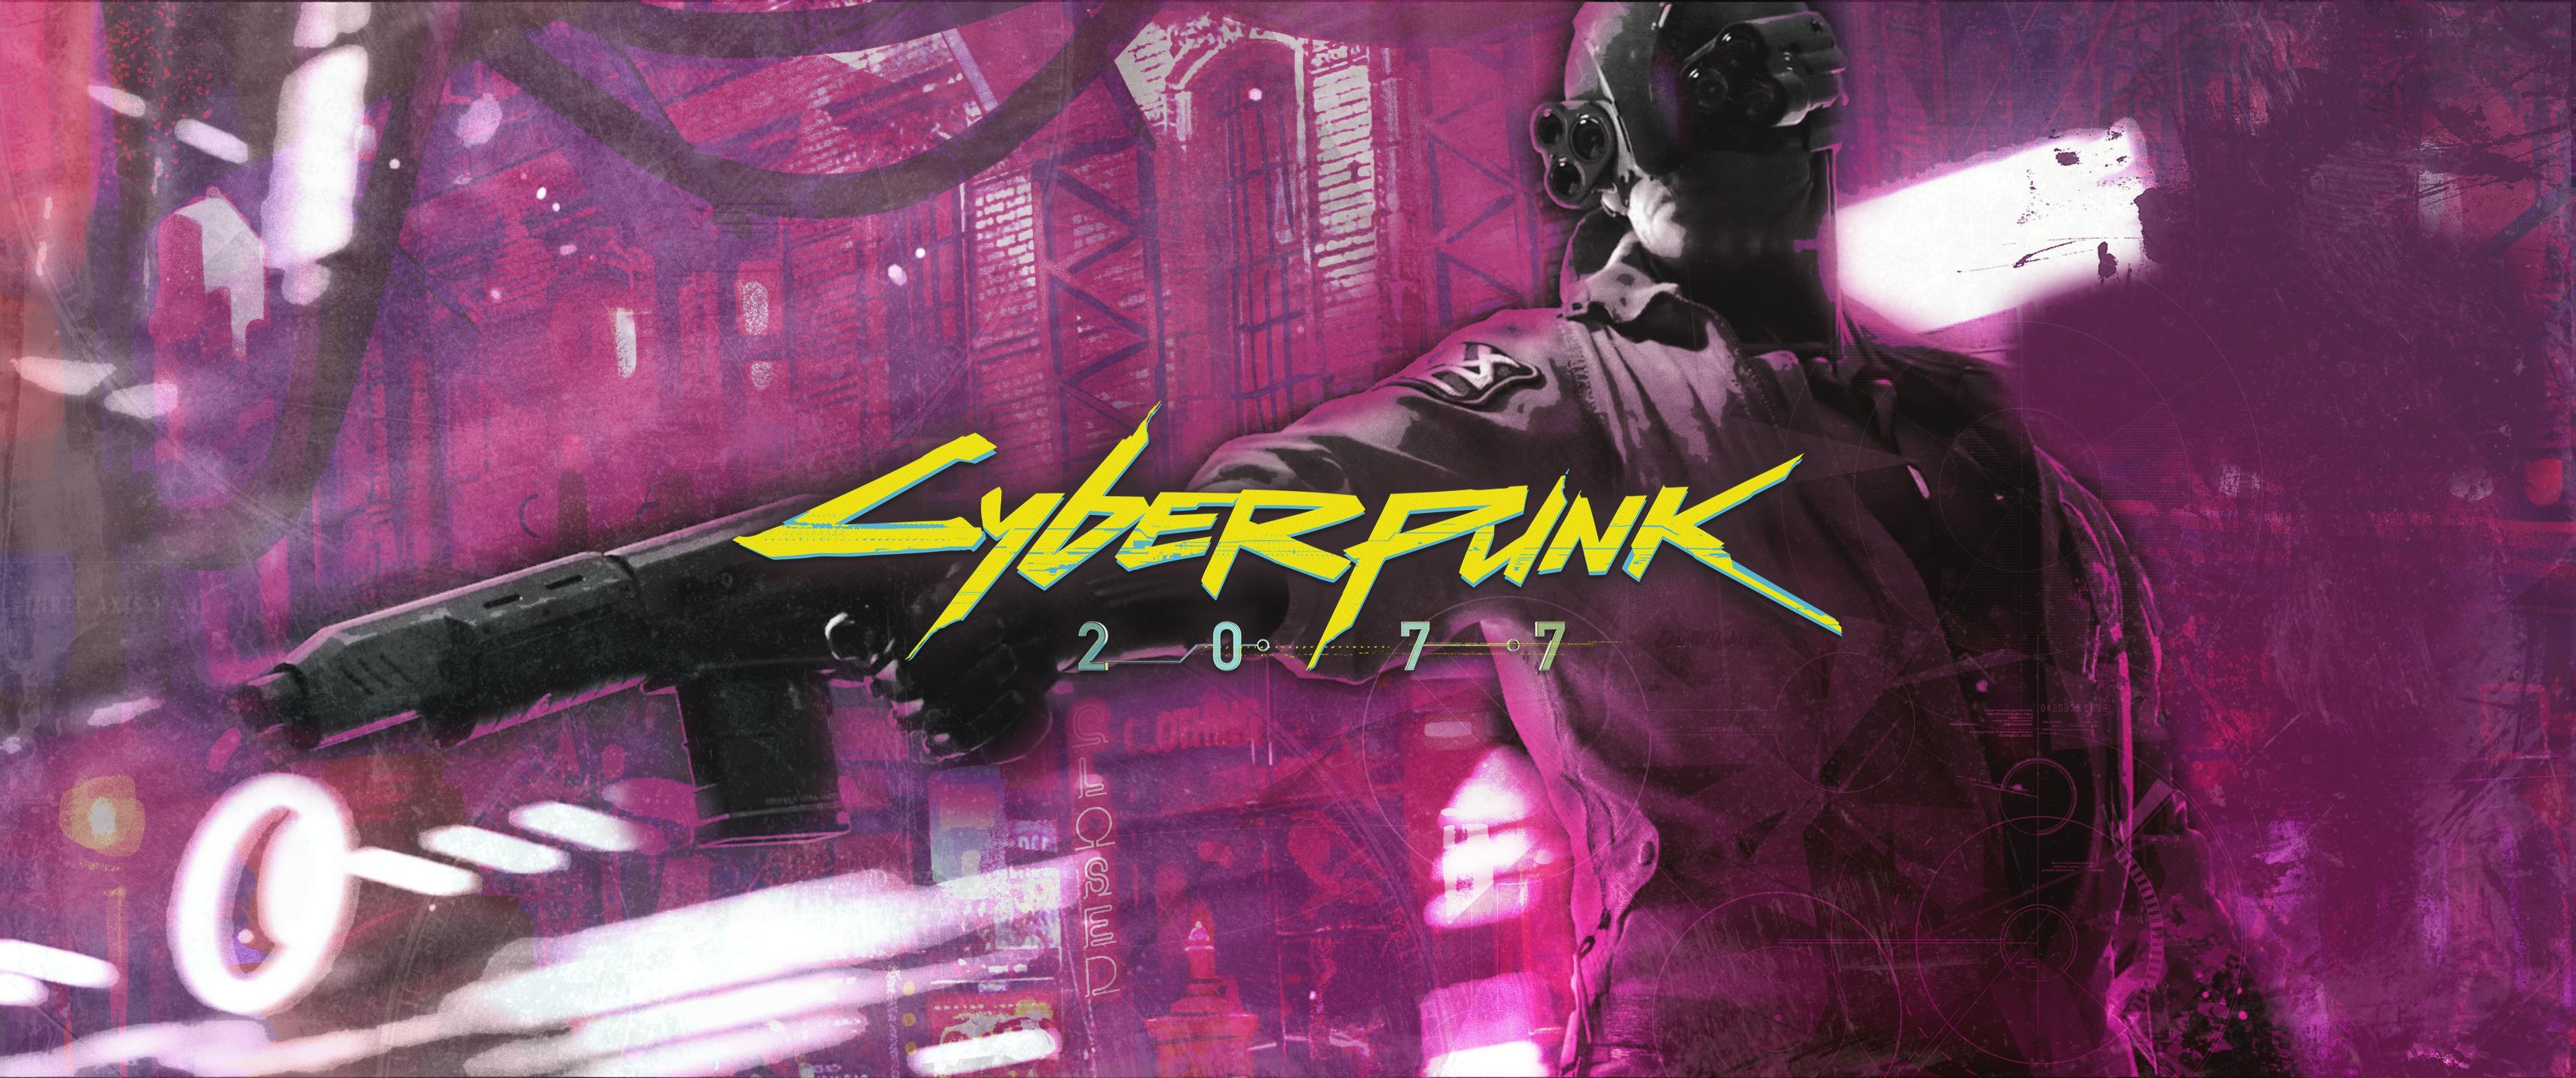 Cyberpunk 3440x1440 Wallpapers Top Free Cyberpunk 3440x1440 Backgrounds Wallpaperaccess 9458